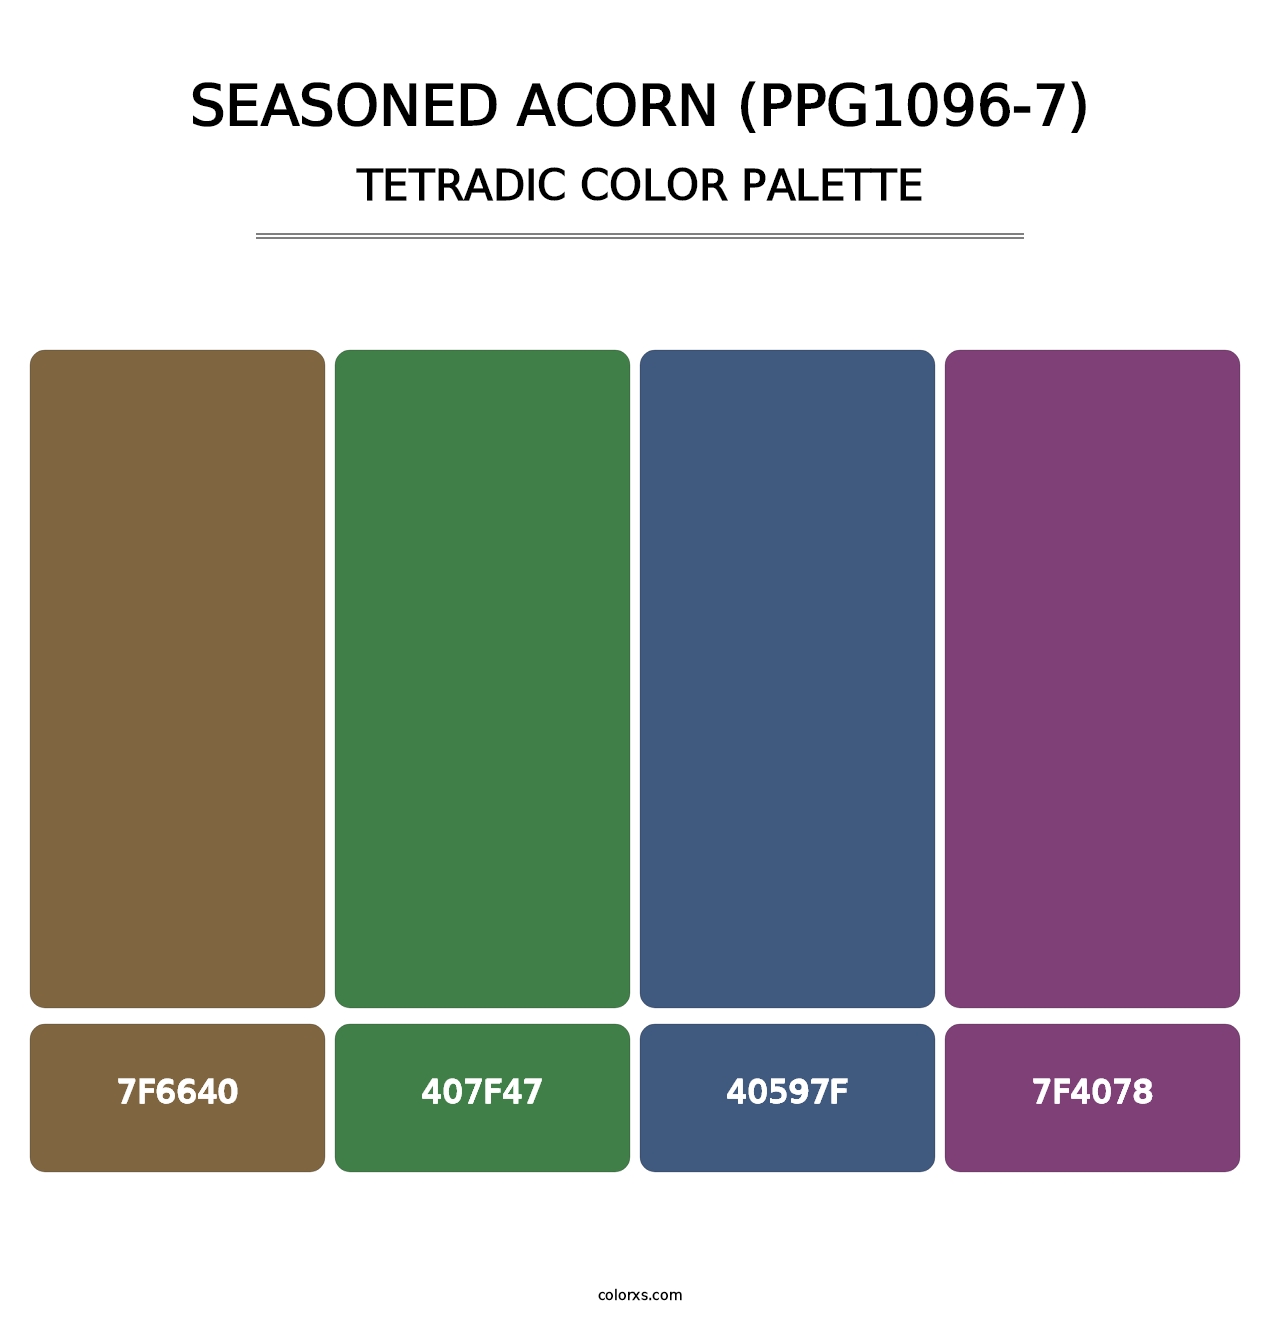 Seasoned Acorn (PPG1096-7) - Tetradic Color Palette